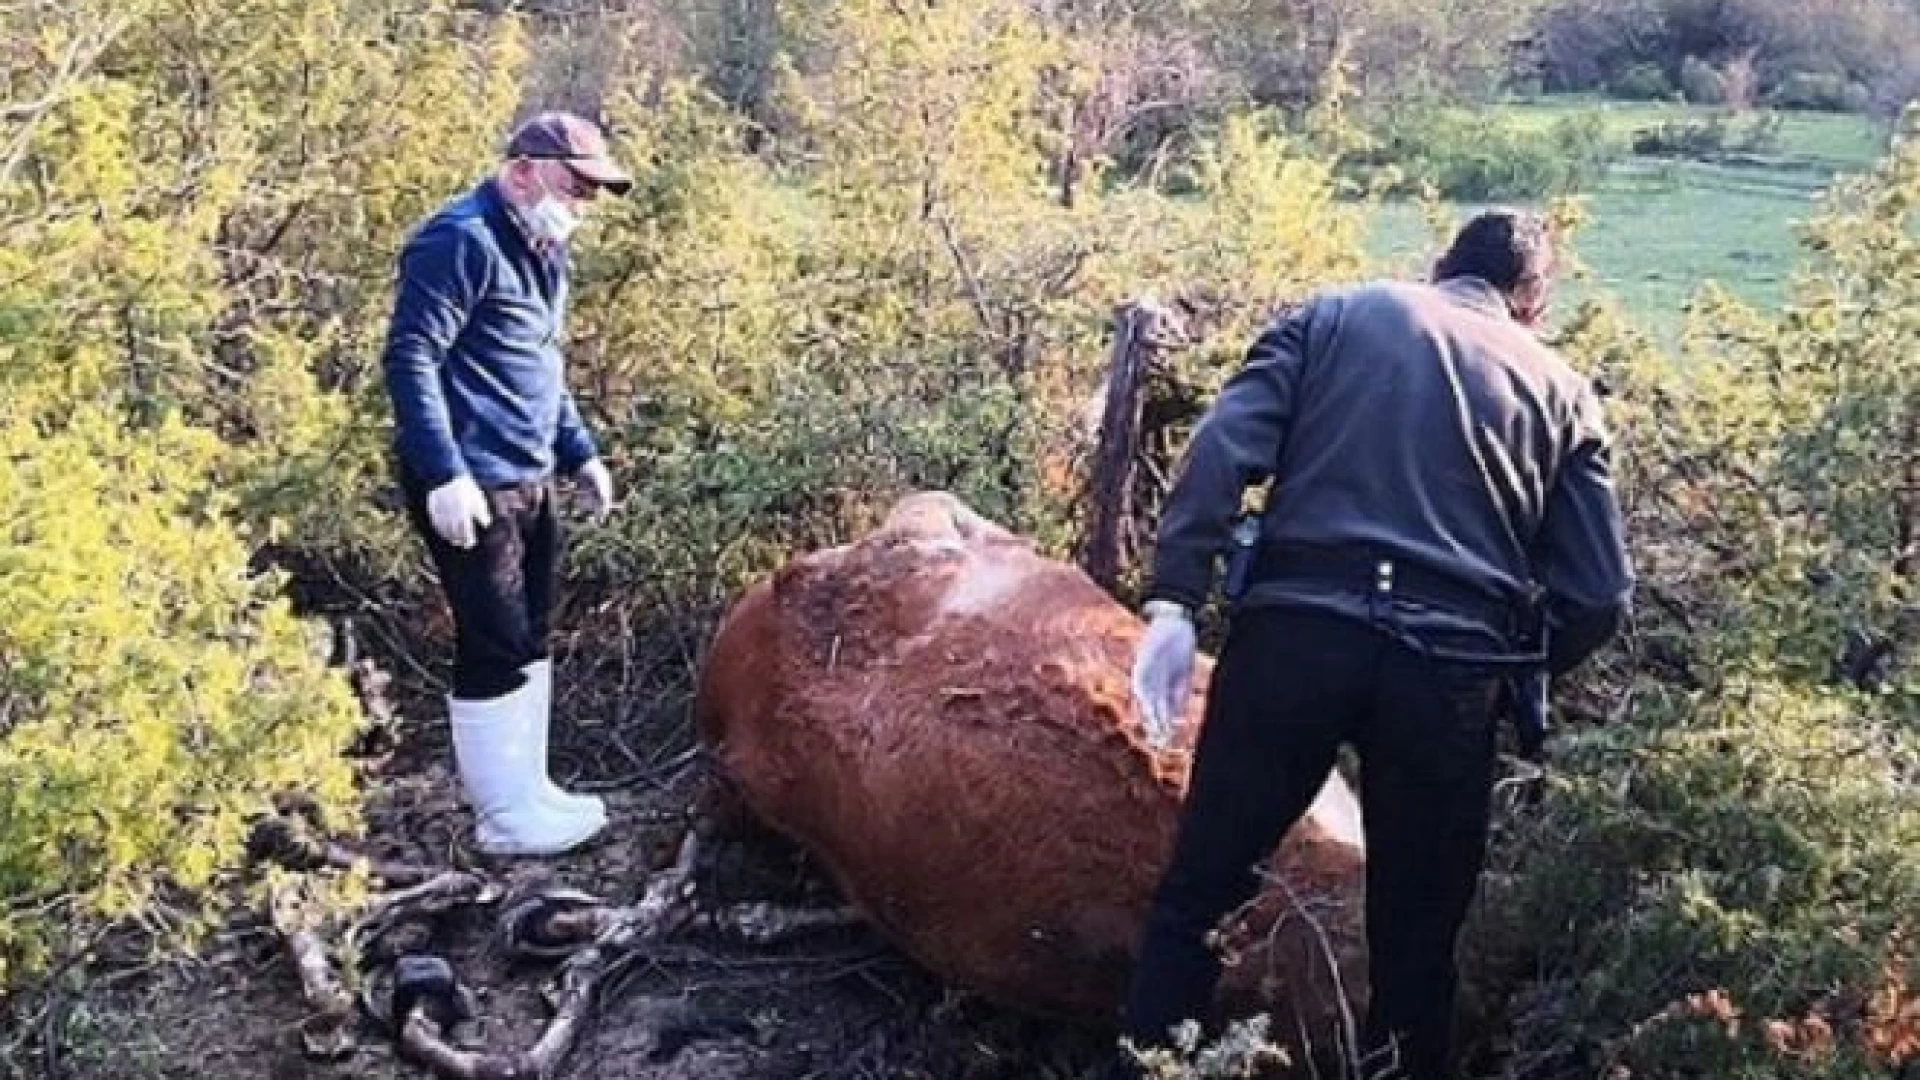 Montenero Val Cocchiara: il sindaco Filippo Zuchegna interviene dopo il ritrovamento di alcune carcasse animali. “I nostri allevatori hanno sempre rispettato le norme”.